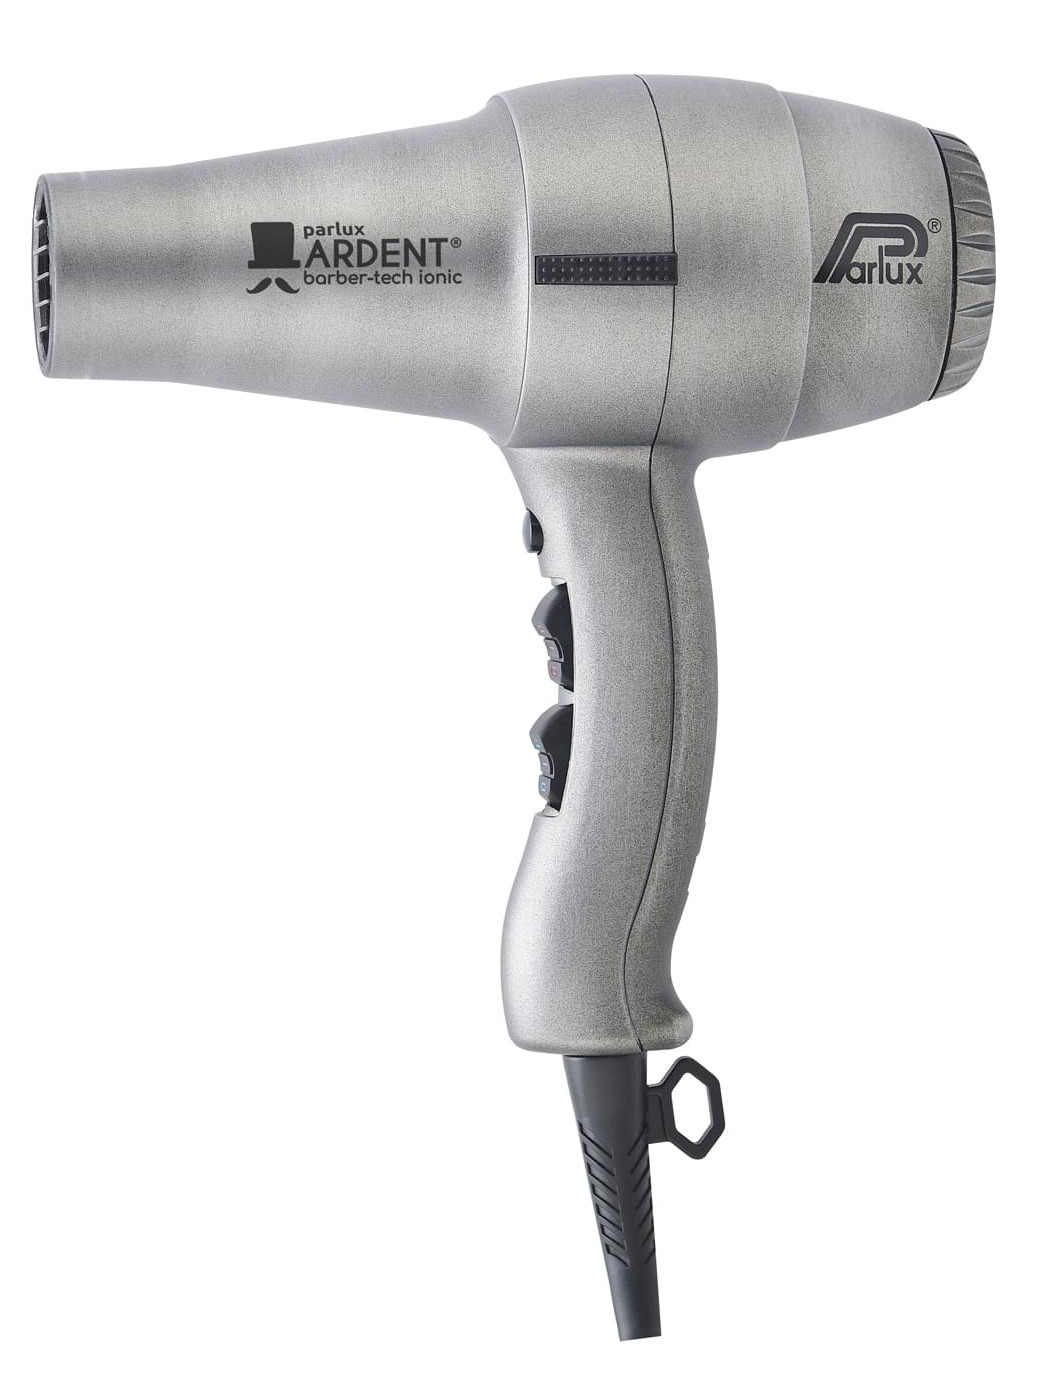 Profesionální fén na vlasy Parlux Ardent Barber-tech ionic - stříbrný (P ARD-1) + DÁREK ZDARMA